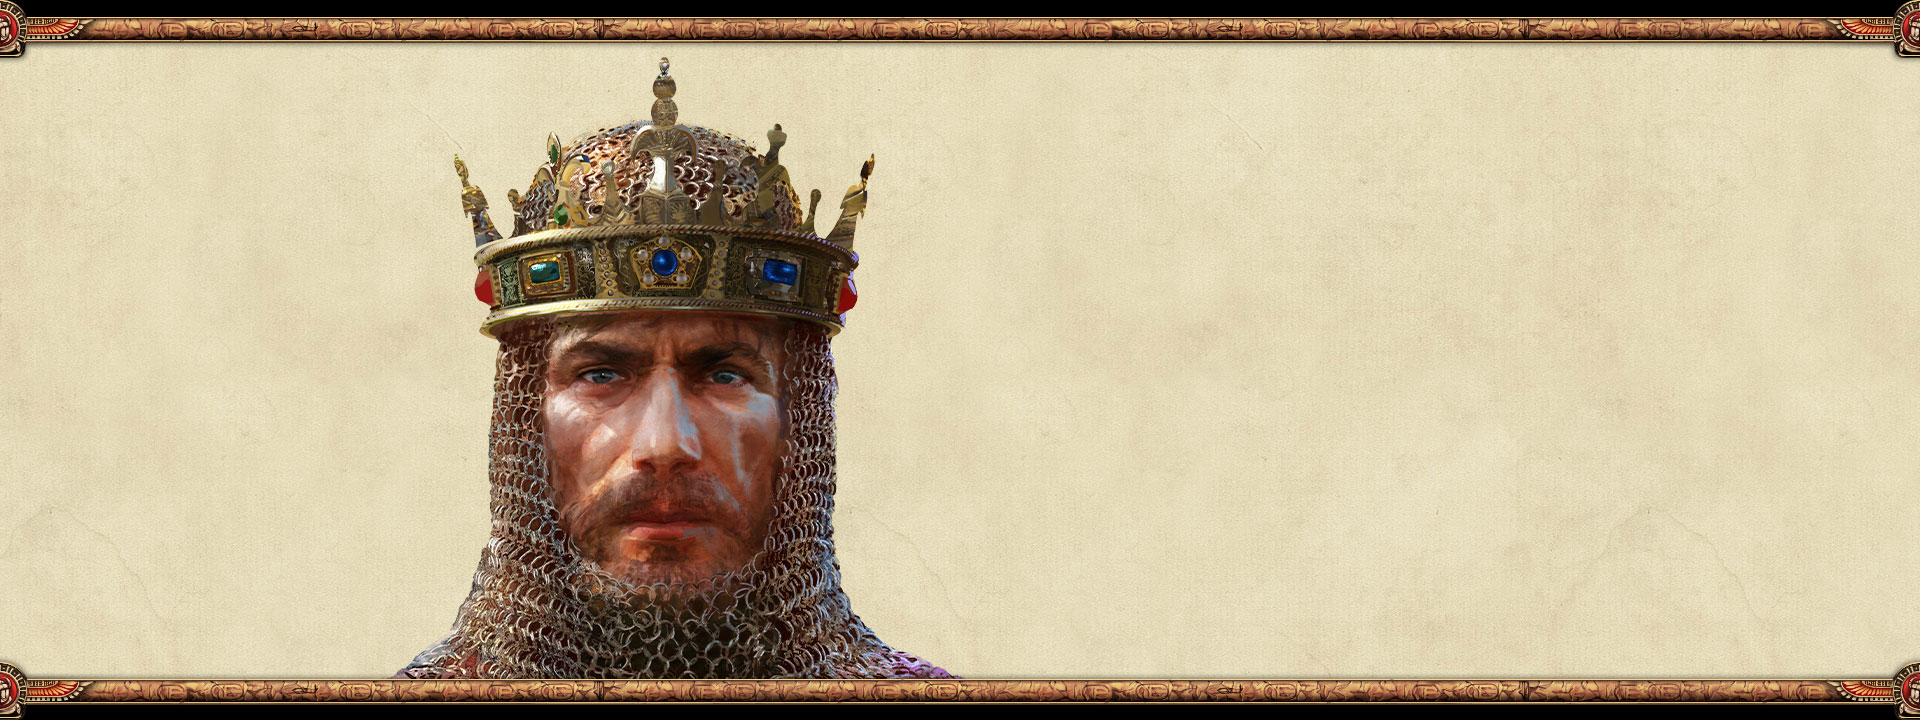 El gobernante de un imperio que lleva una cadena y una corona